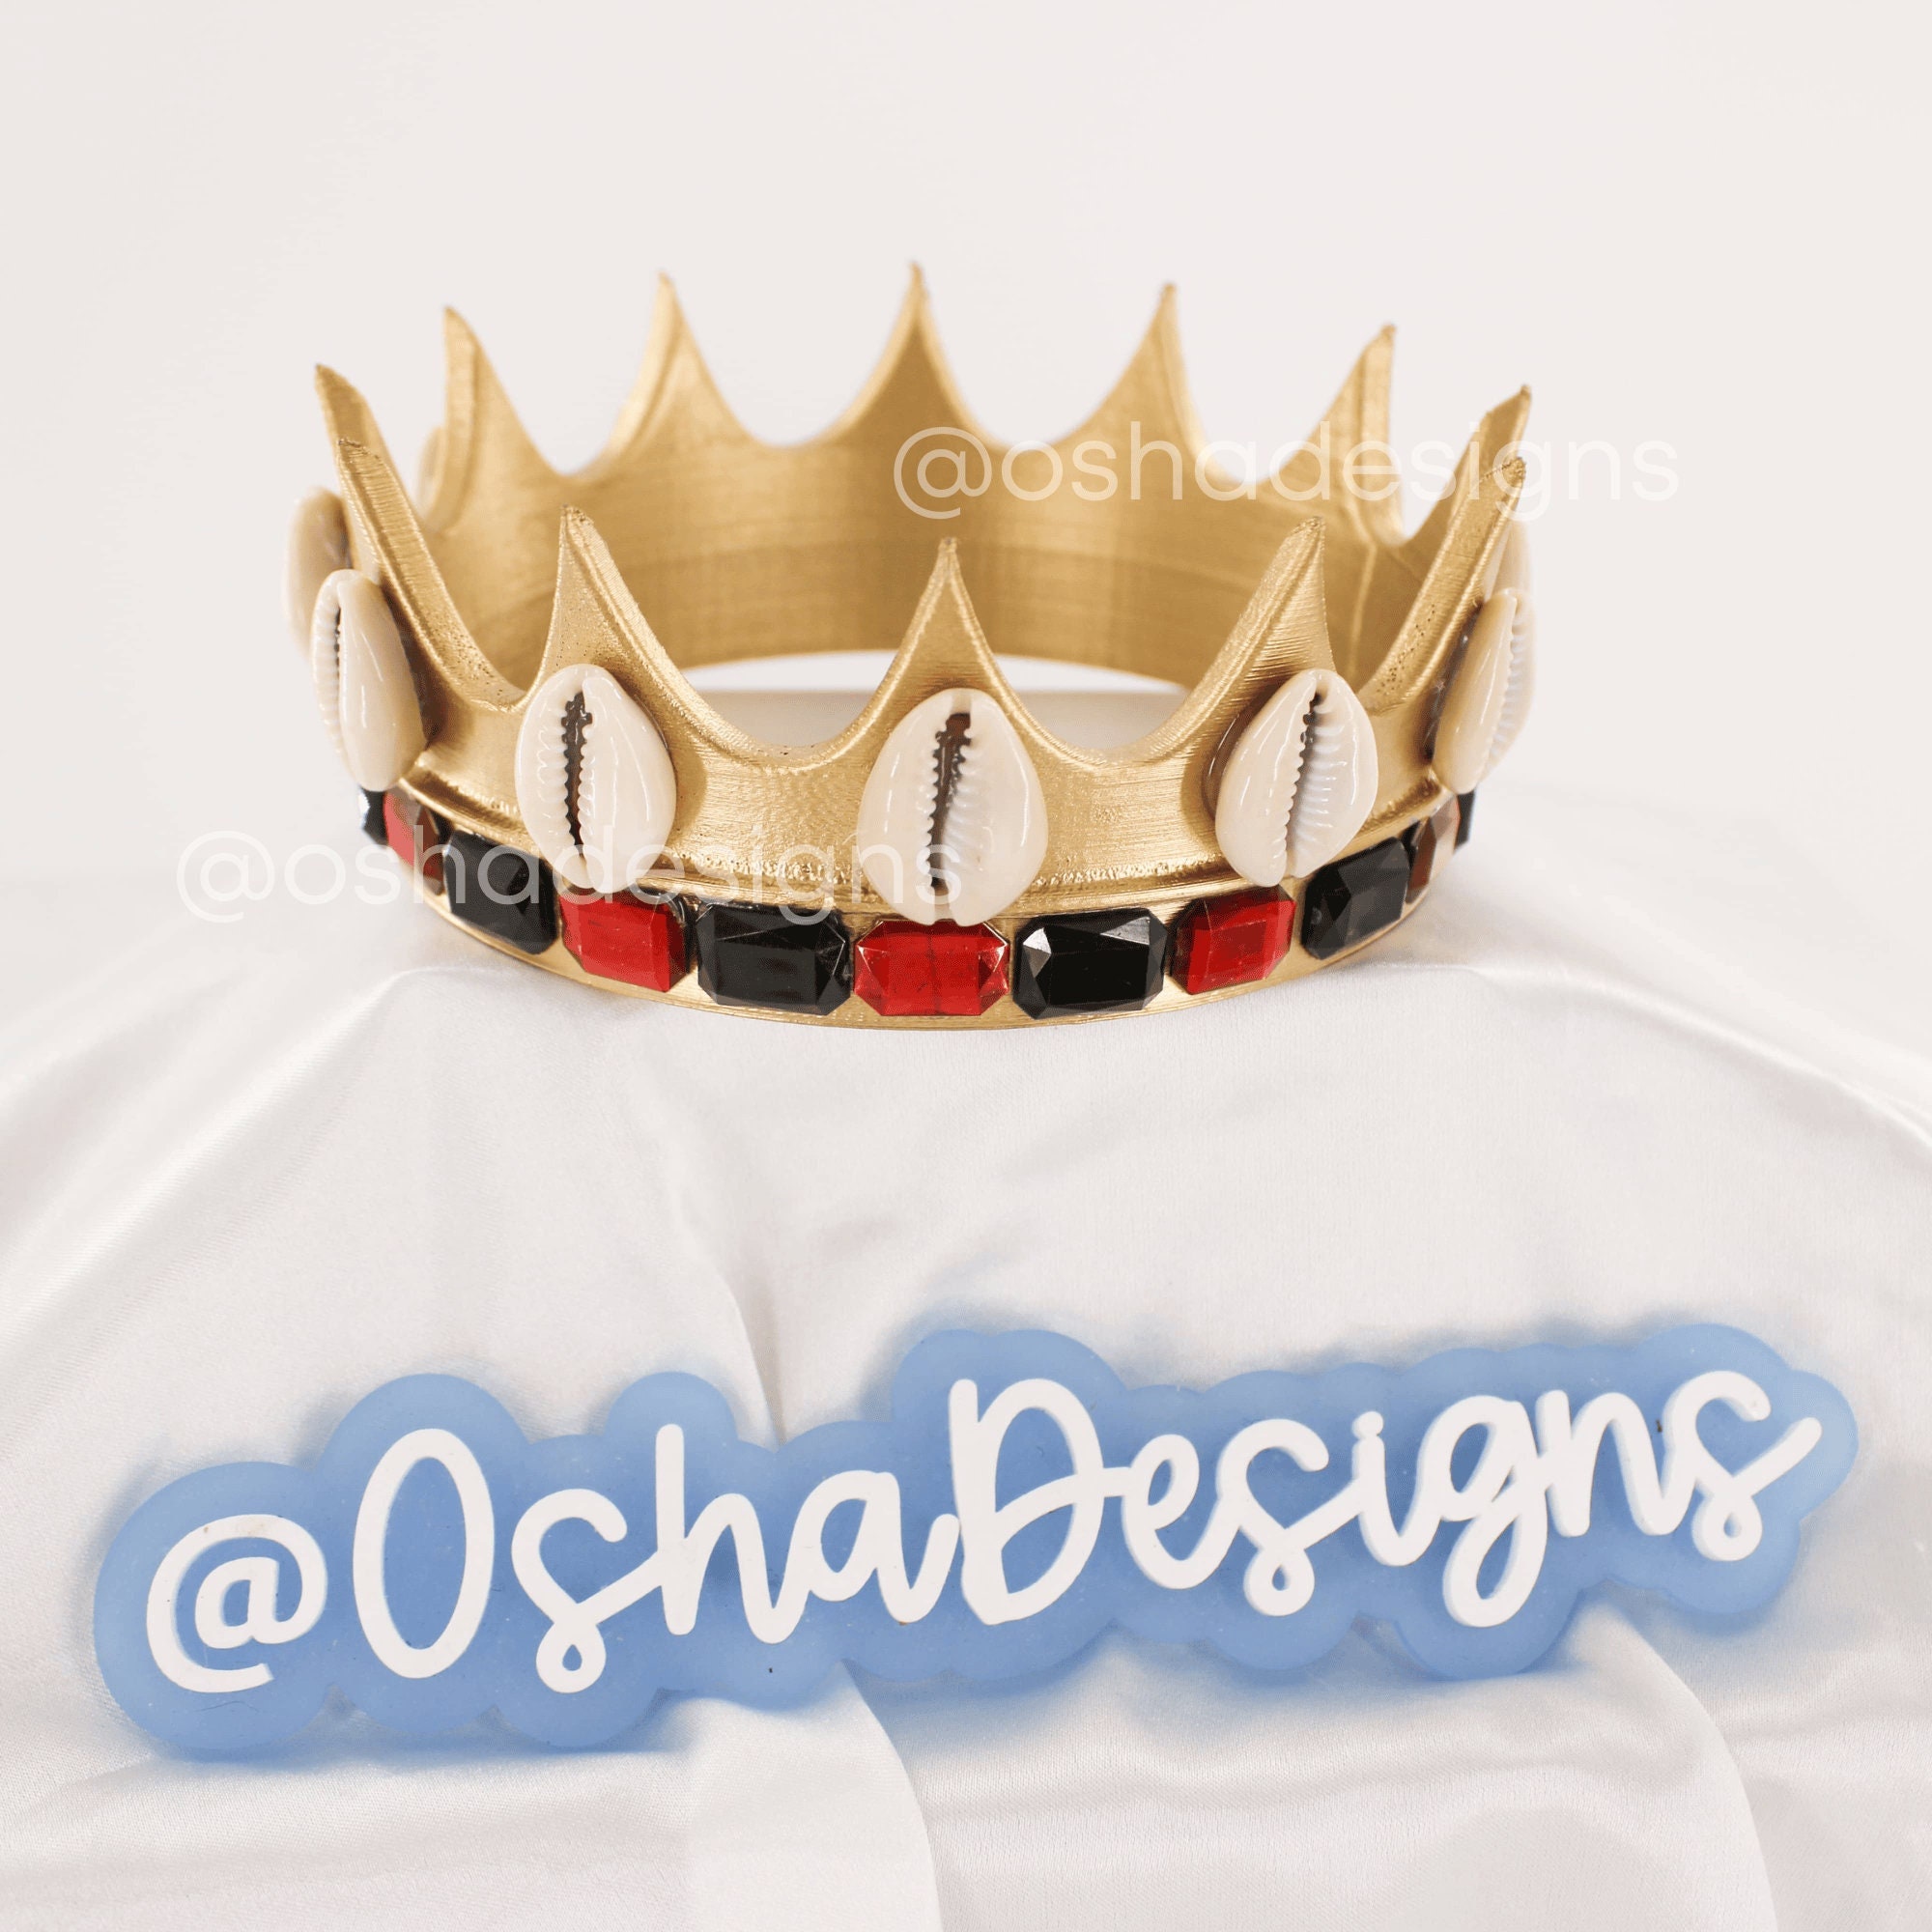 Yoruba Tribe Magnificent Creator Orisha Obatala Beaded Babalawo Crown ~  Nigeria